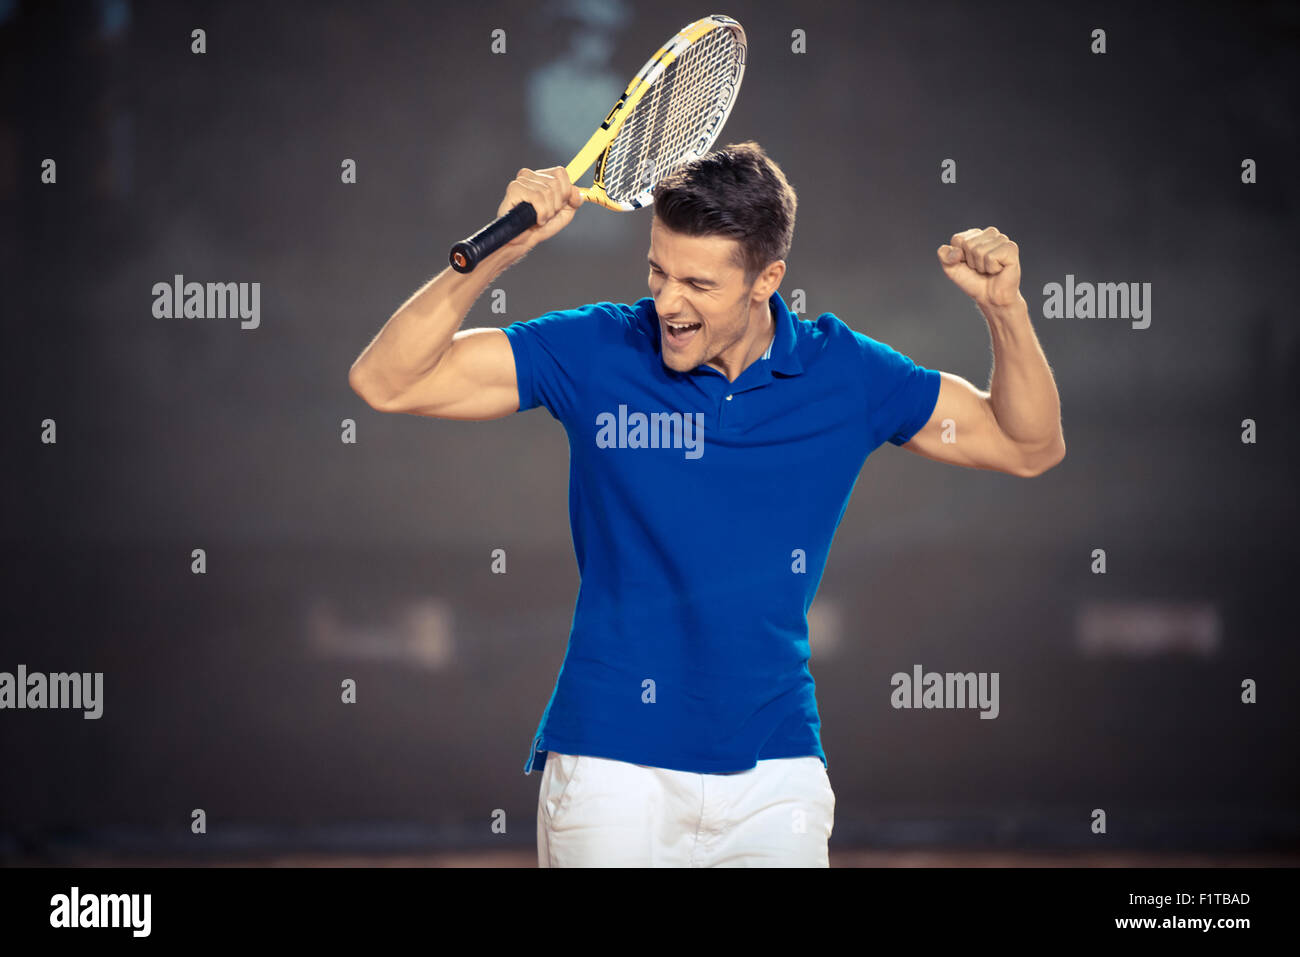 Ritratto di un tennista per celebrare la sua vittoria Foto Stock